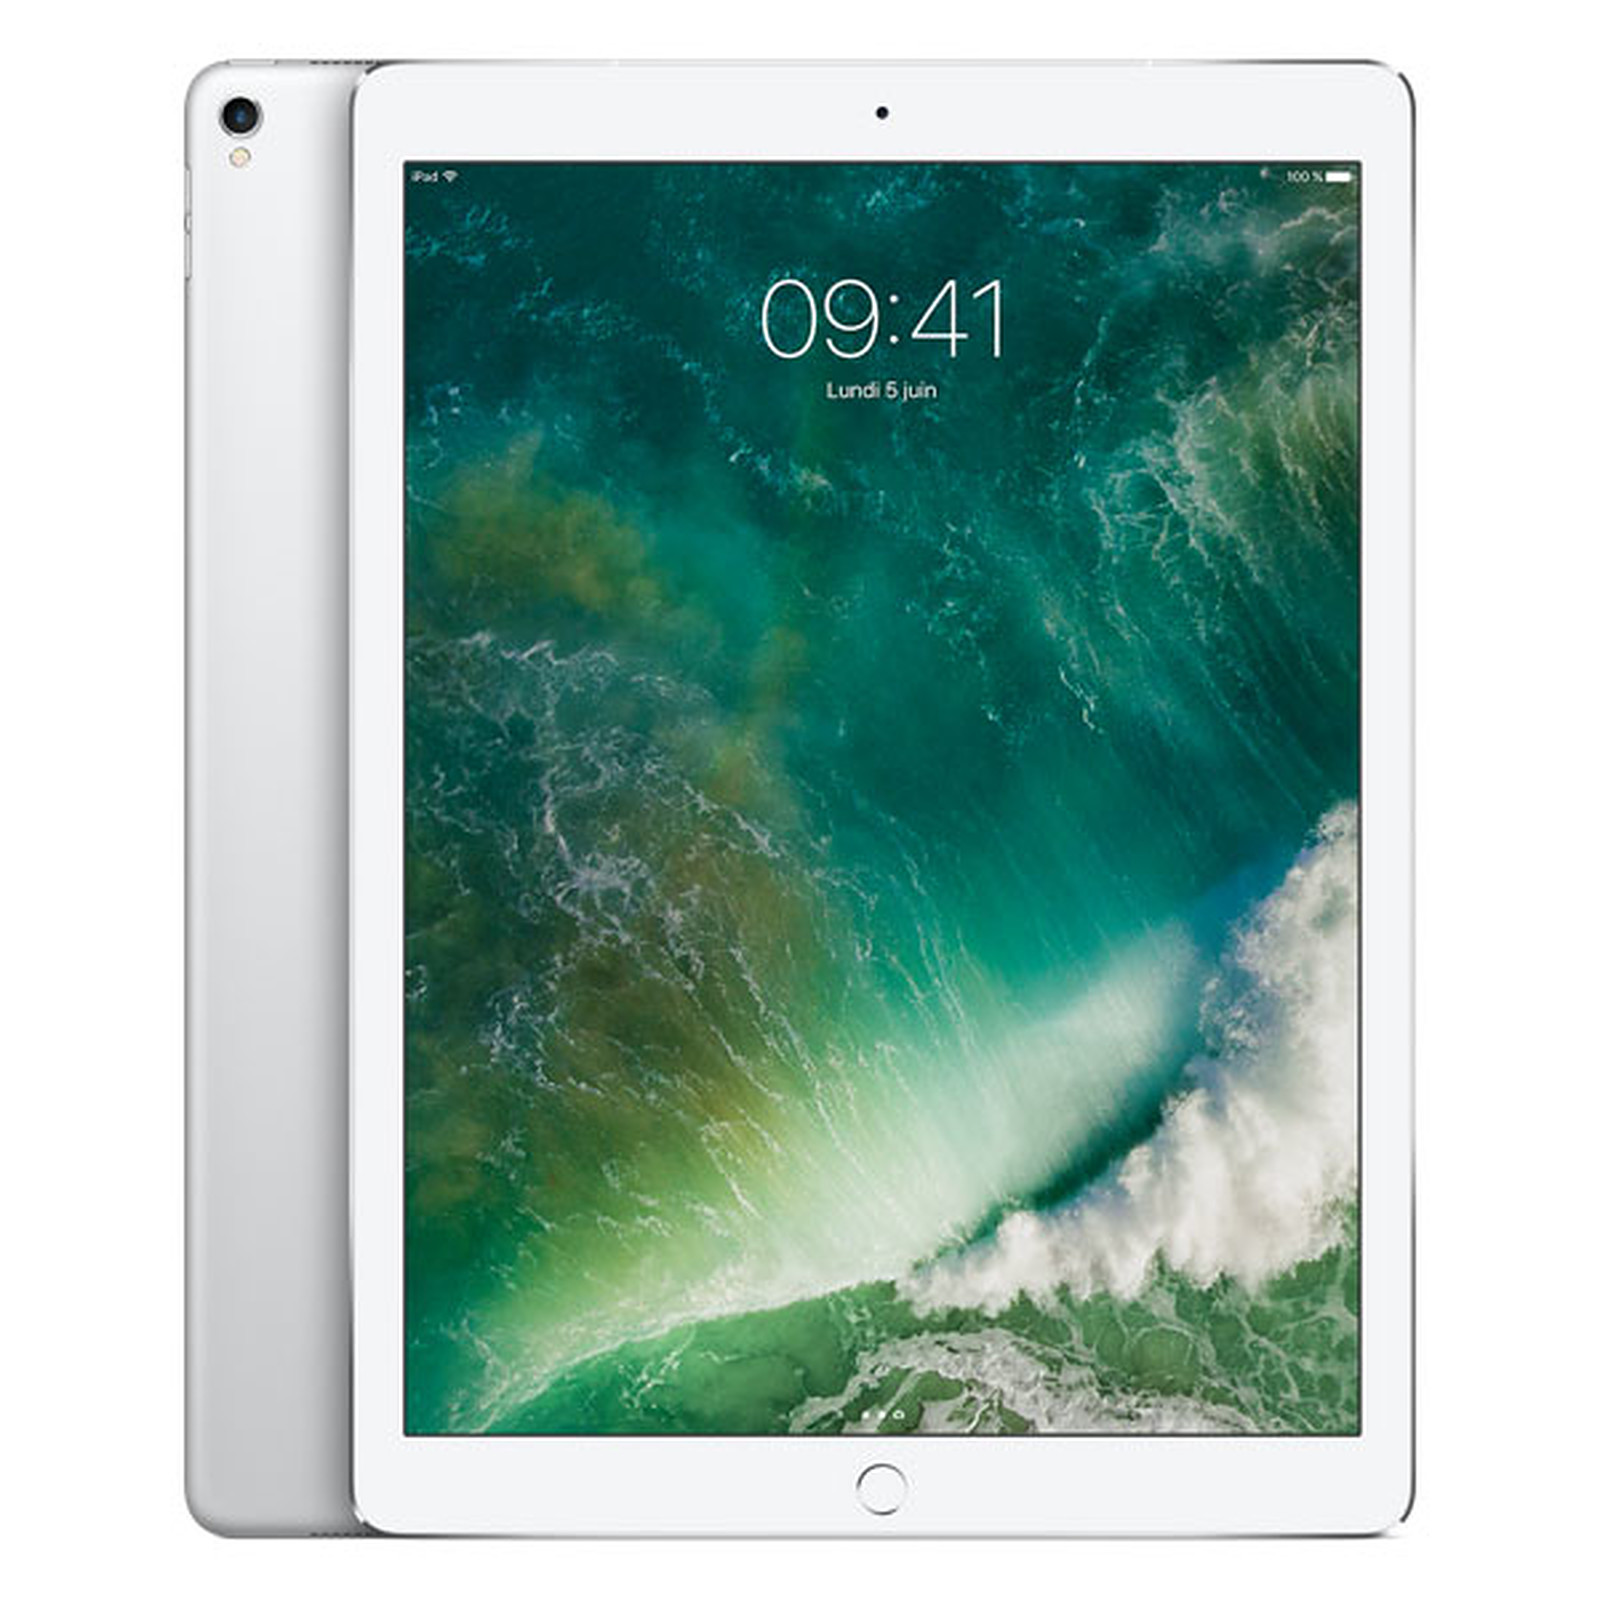 Apple iPad Pro 12.9 pouces 512 Go Wi-Fi + Cellular Argent · Reconditionne - Tablette tactile Apple